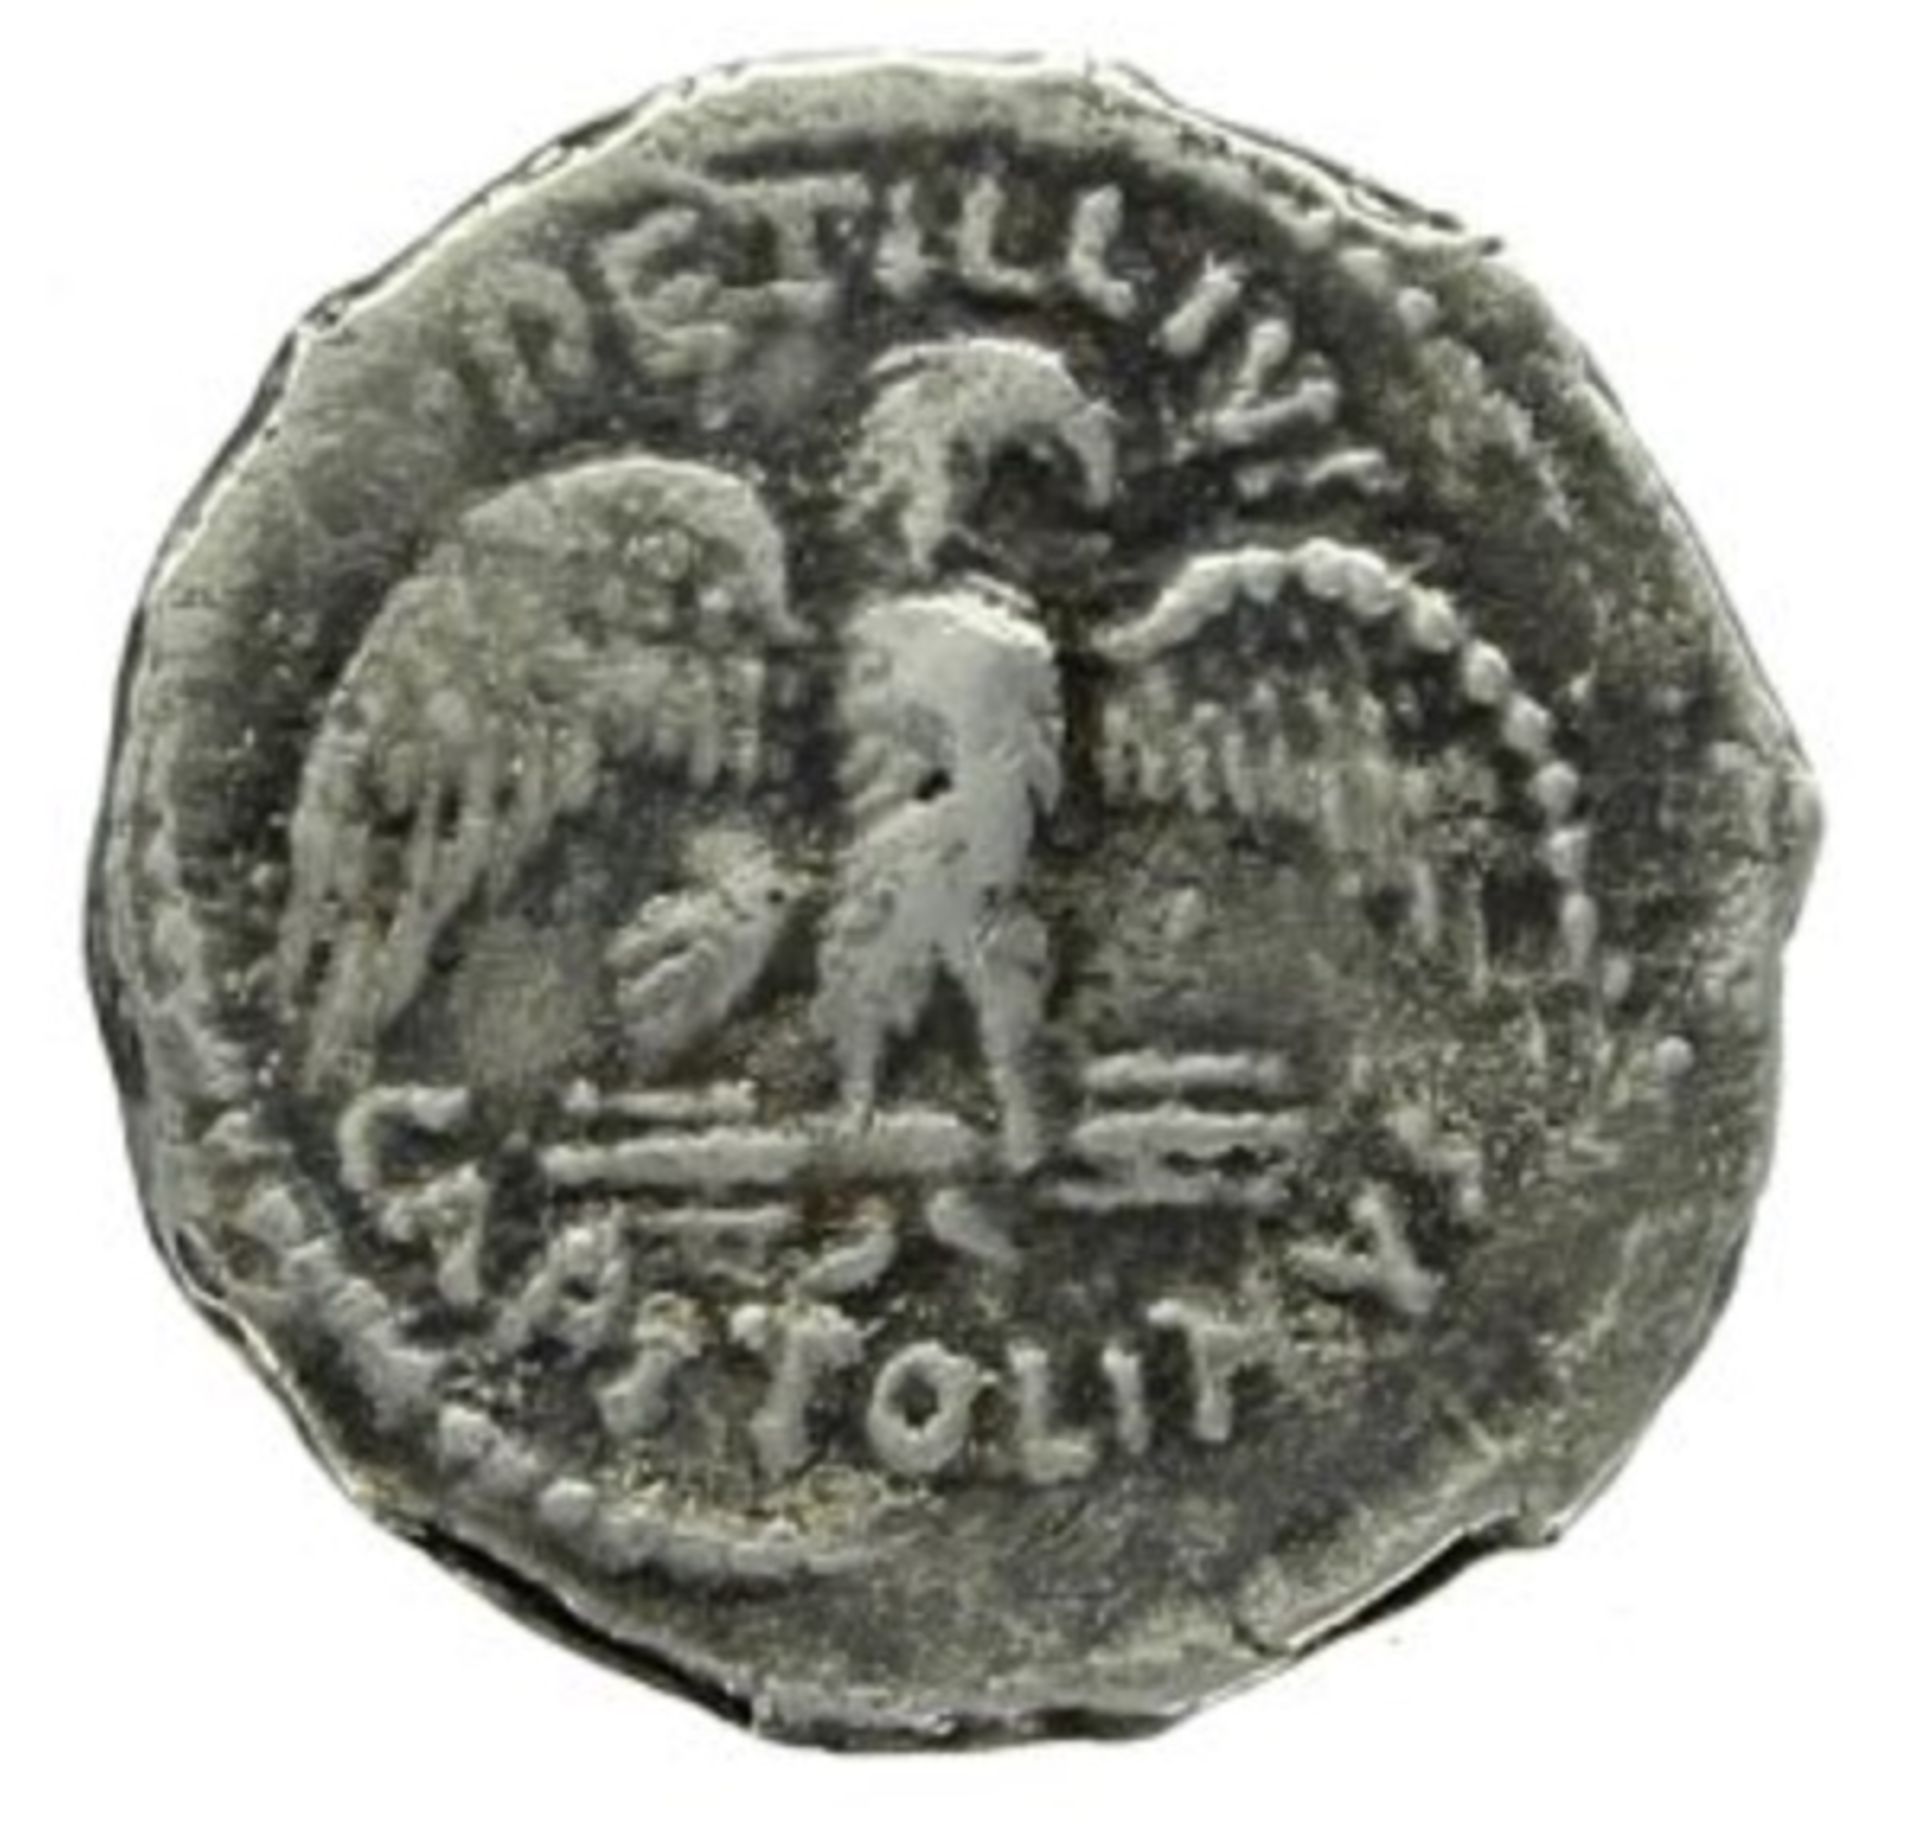 Petillius Capitolinus Roman Republic, Denarius 43 BC Coin